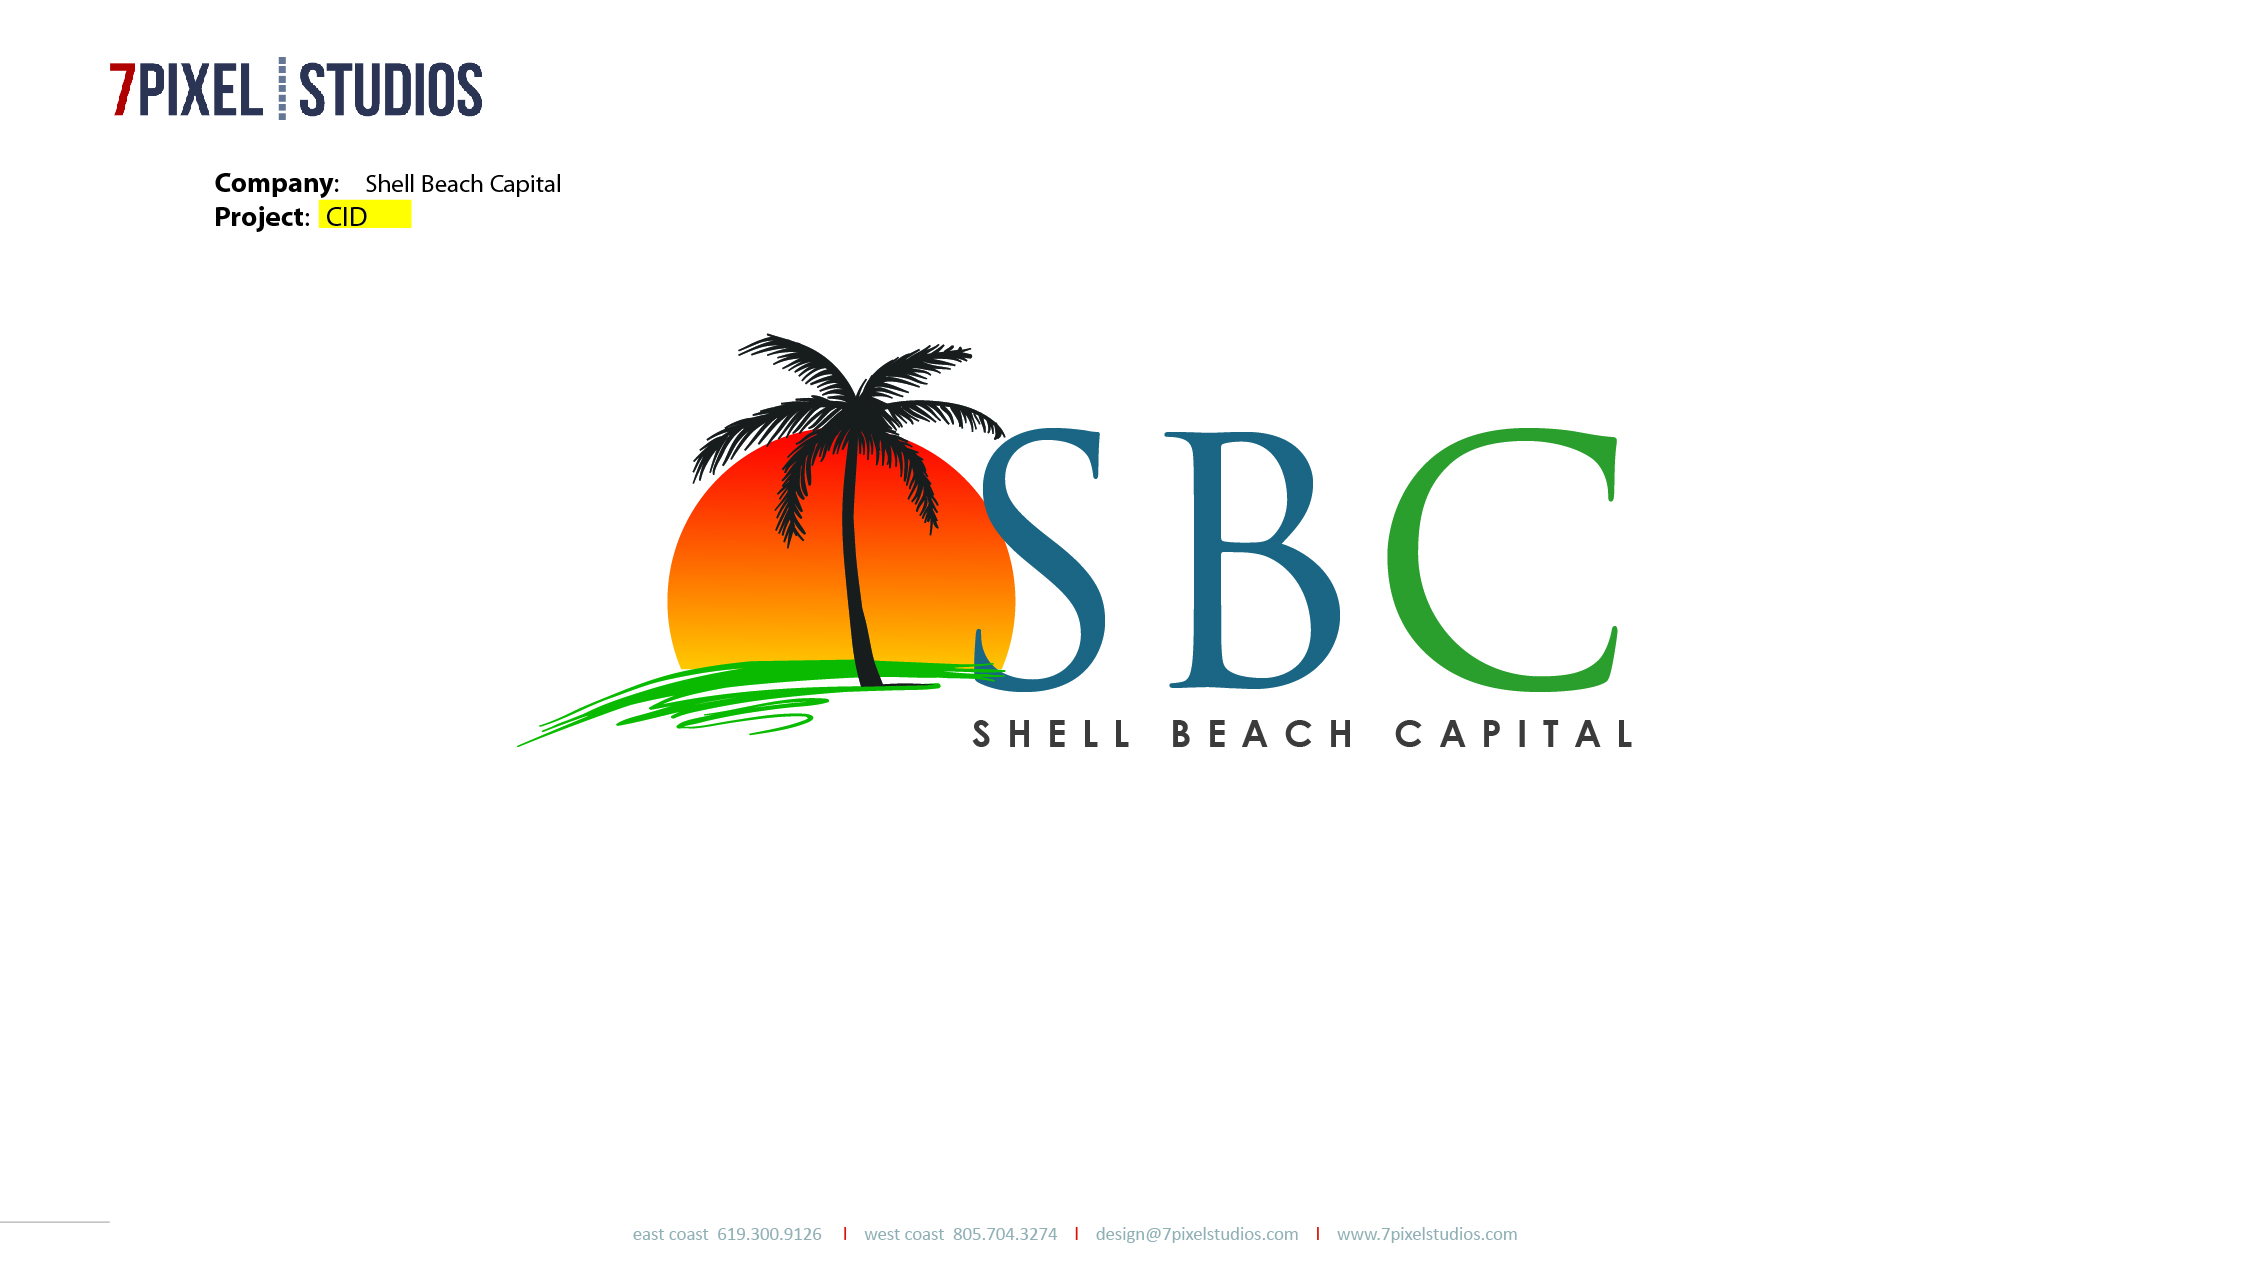 Shell Beach Capital